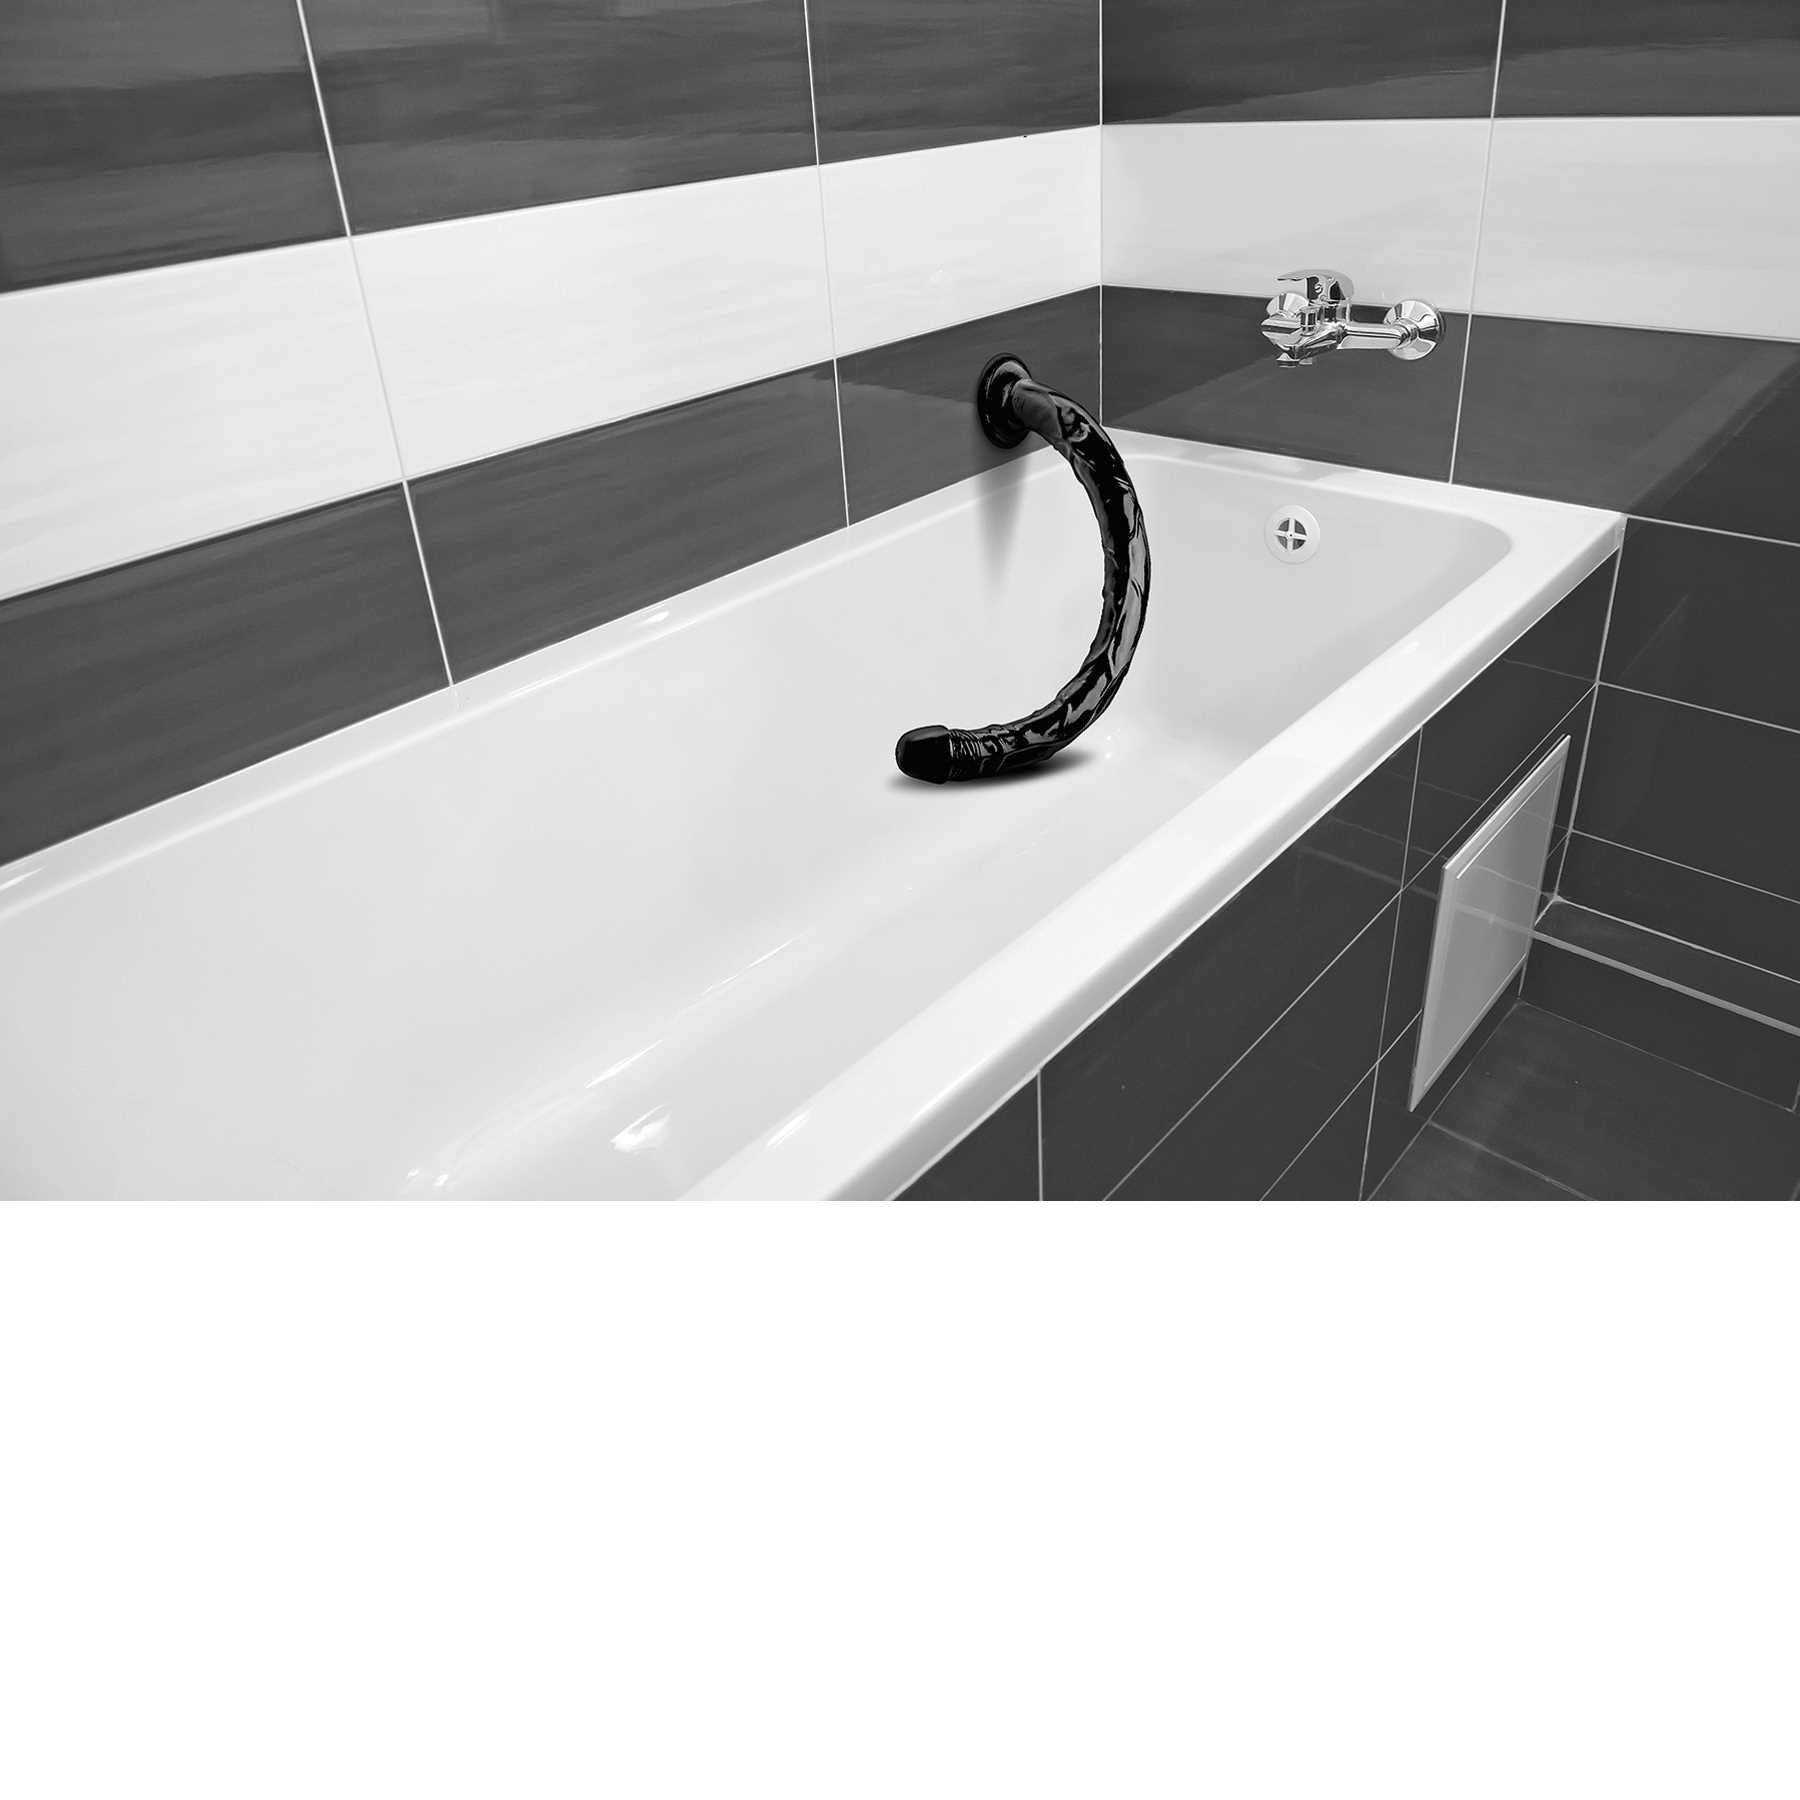 Hosed 19 inch Realistic Dildo mood shot in bathtub